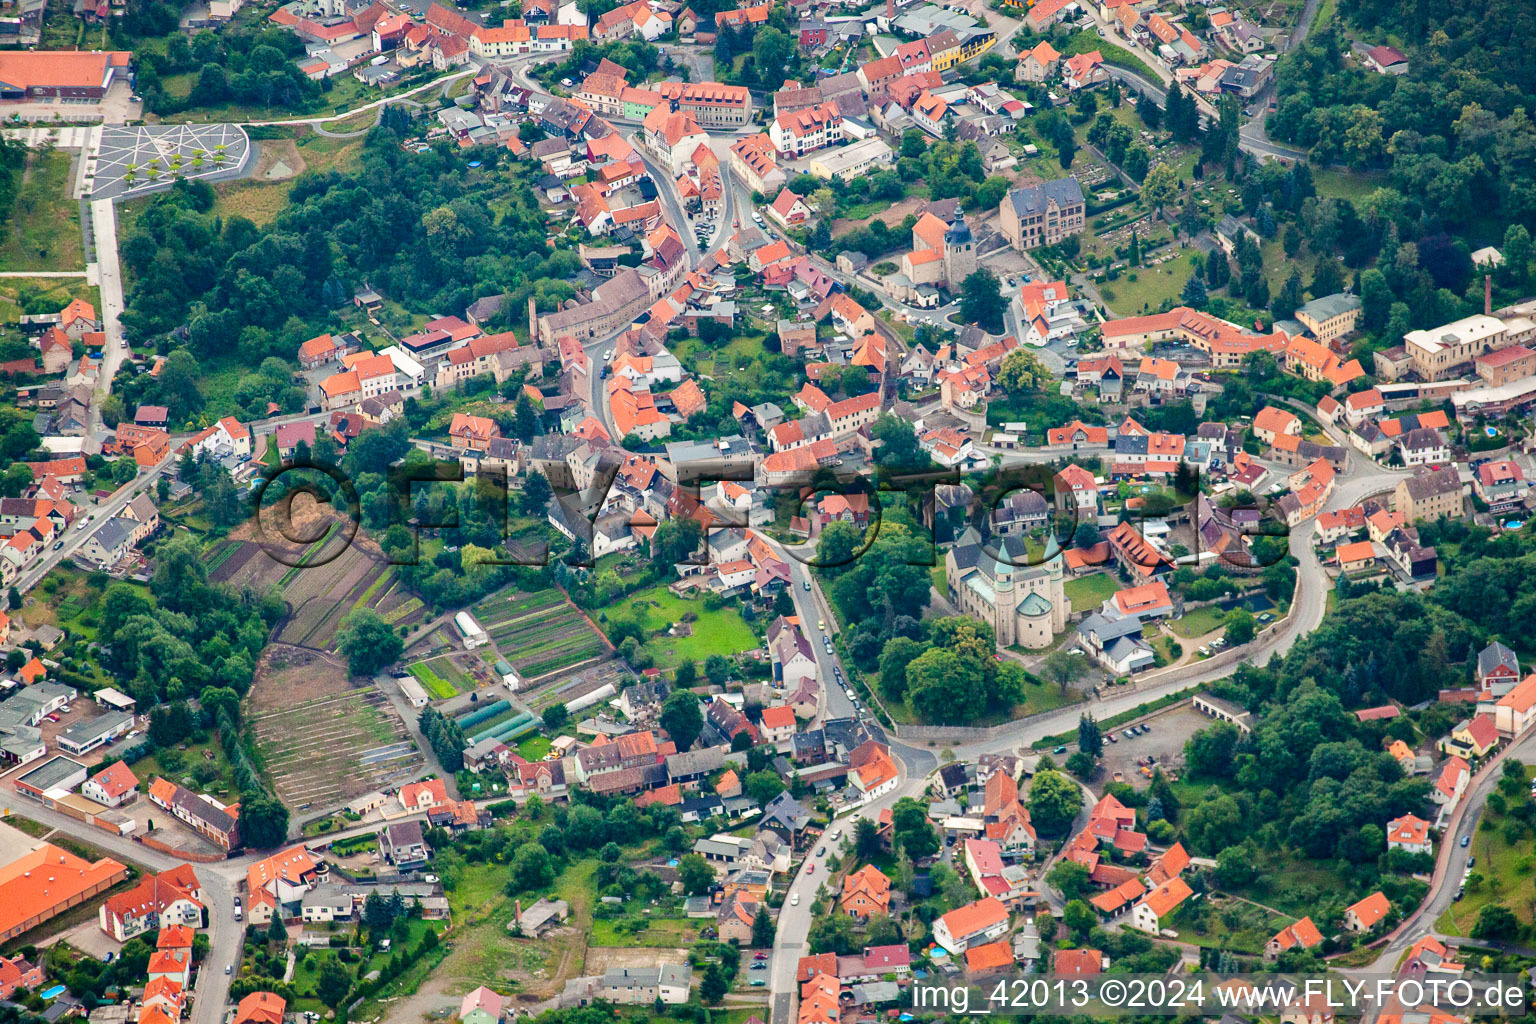 Luftbild von Ortsansicht der Straßen und Häuser der Wohngebiete in Bad Suderode in Quedlinburg im Bundesland Sachsen-Anhalt, Deutschland